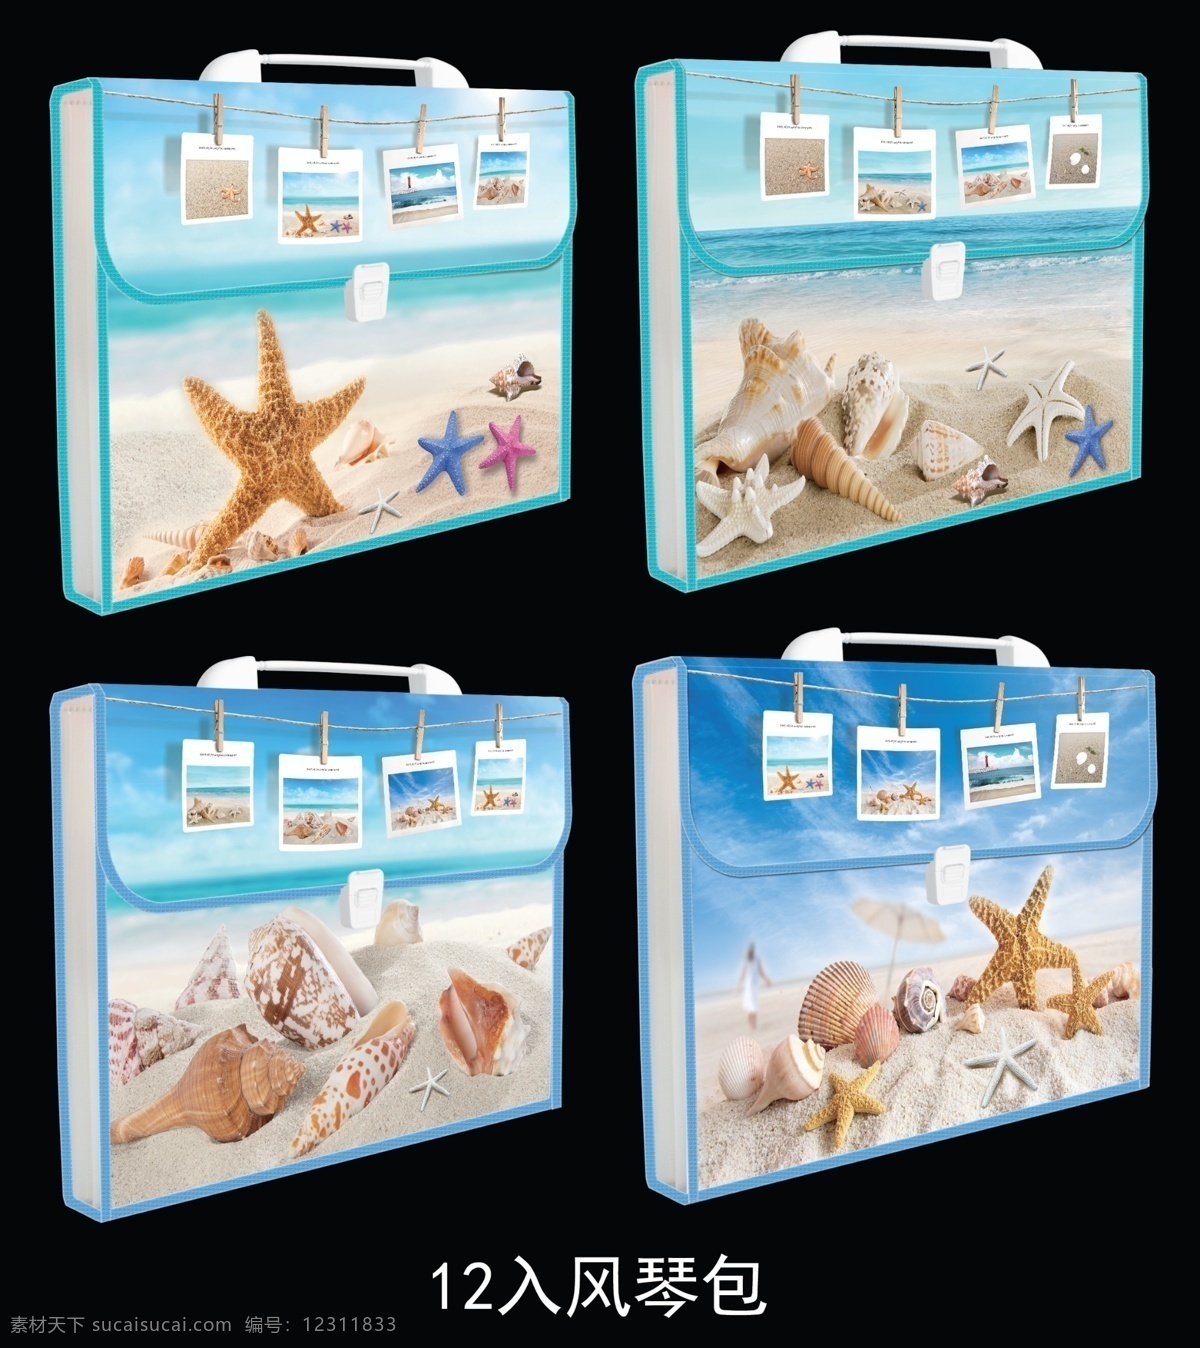 入 风琴包 海滩 海星 沙子海螺 照片大海 海洋风 原创设计 其他原创设计